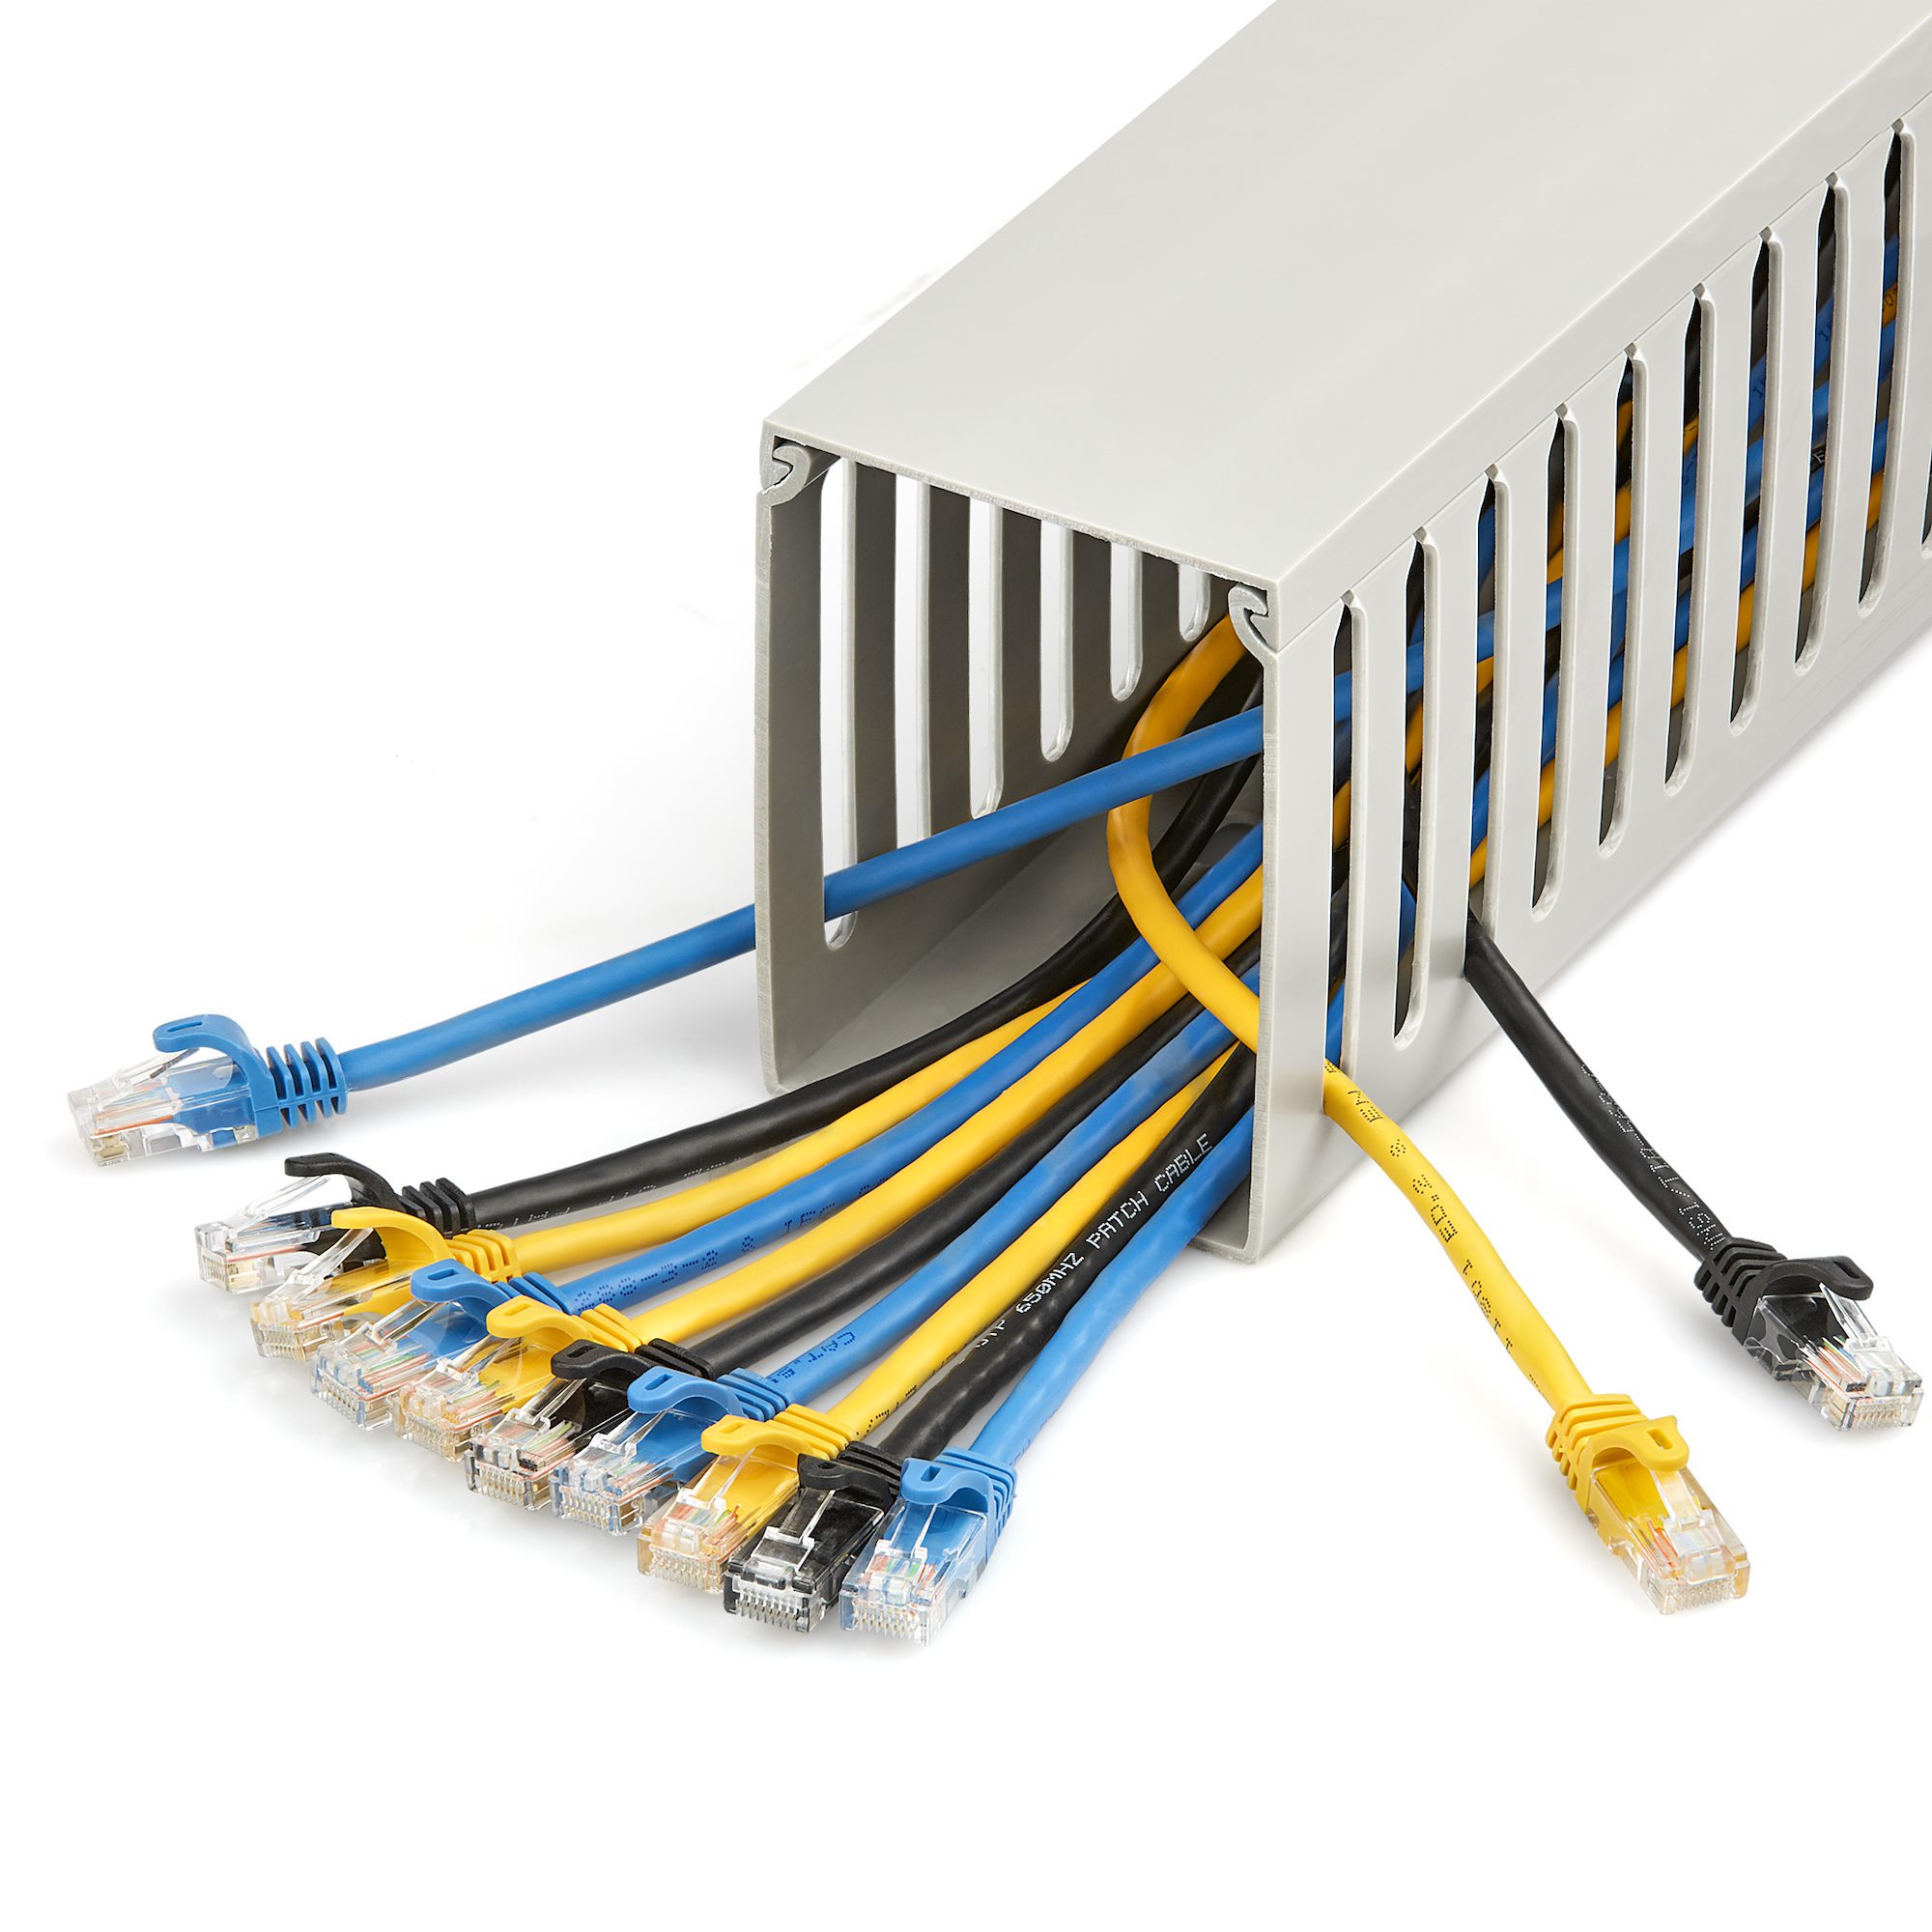 Canaleta 2 m para Cables - con Ranura - Soluciones de Enrutamiento de  Cableado